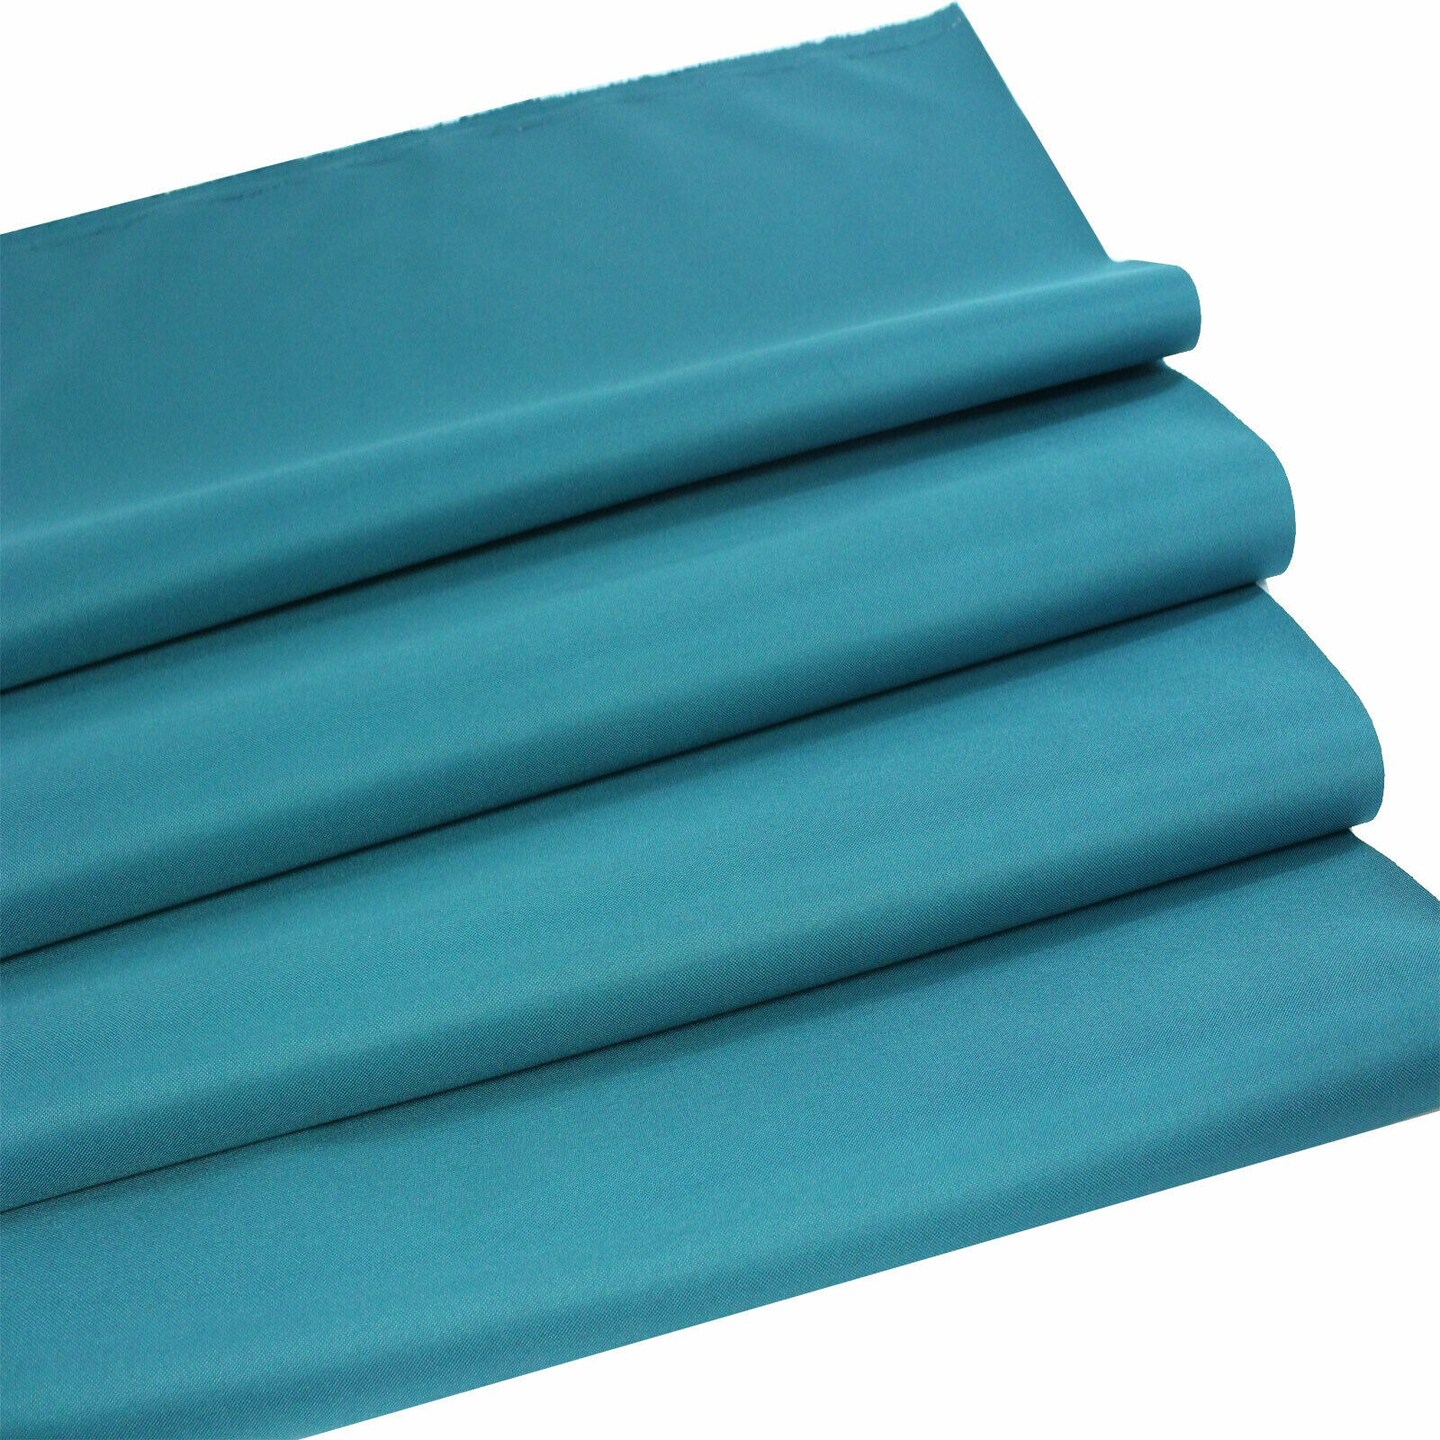 Heat-Blocking, Glare-Reducing Marine Waterproof Canvas Fabric